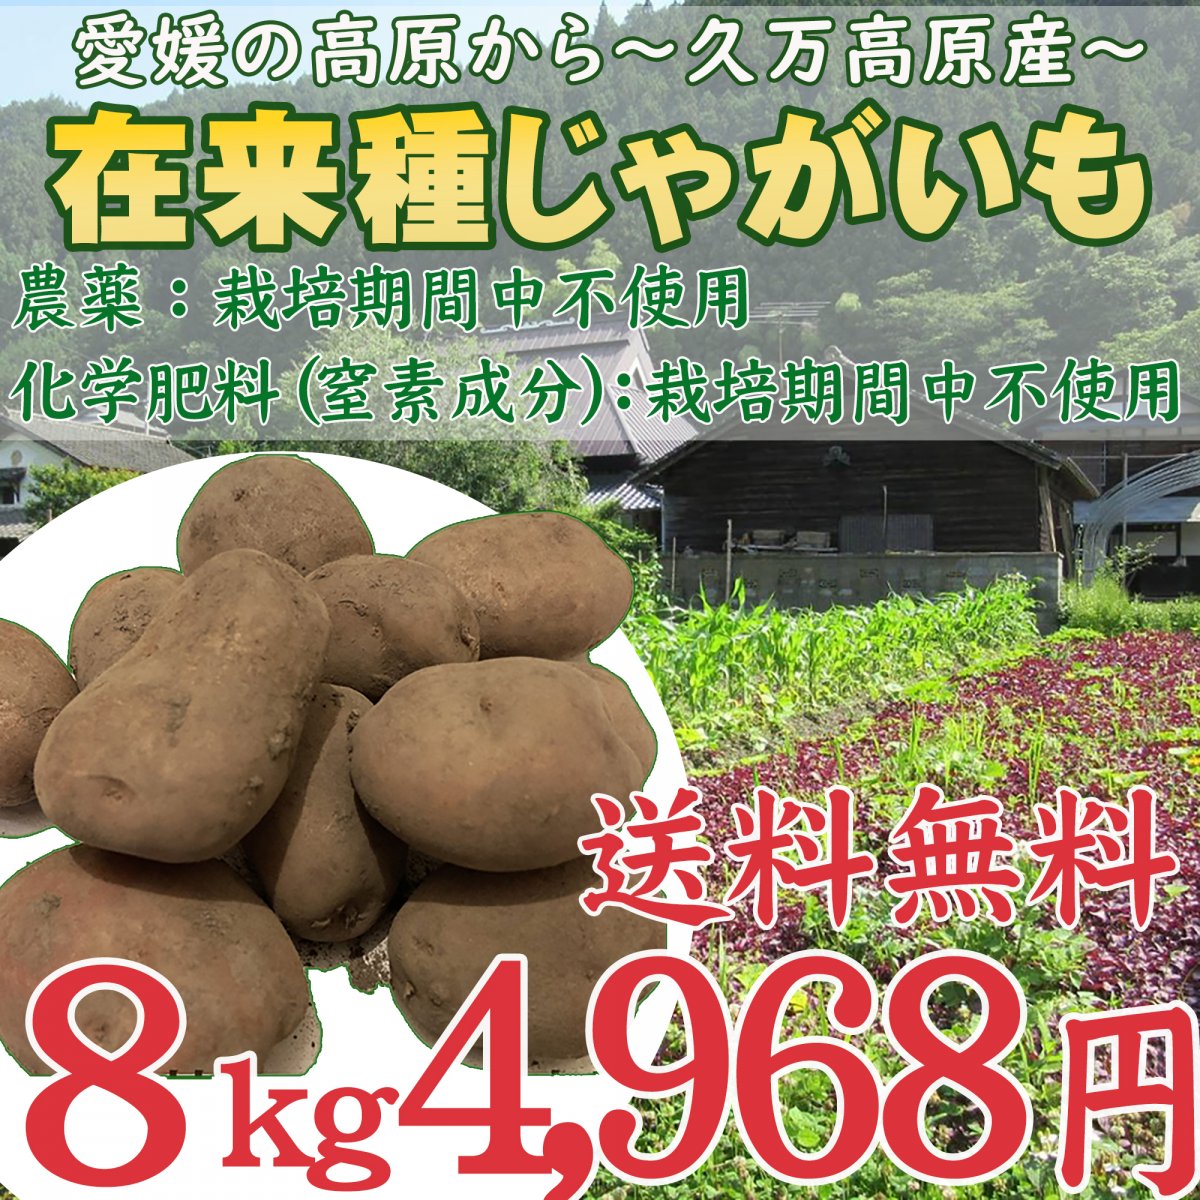 じゃがいも 8キロ 愛媛県久万高原産 農薬不使用 化学肥料(窒素成分) 栽培期間中不使用 在来種 地いも 野菜